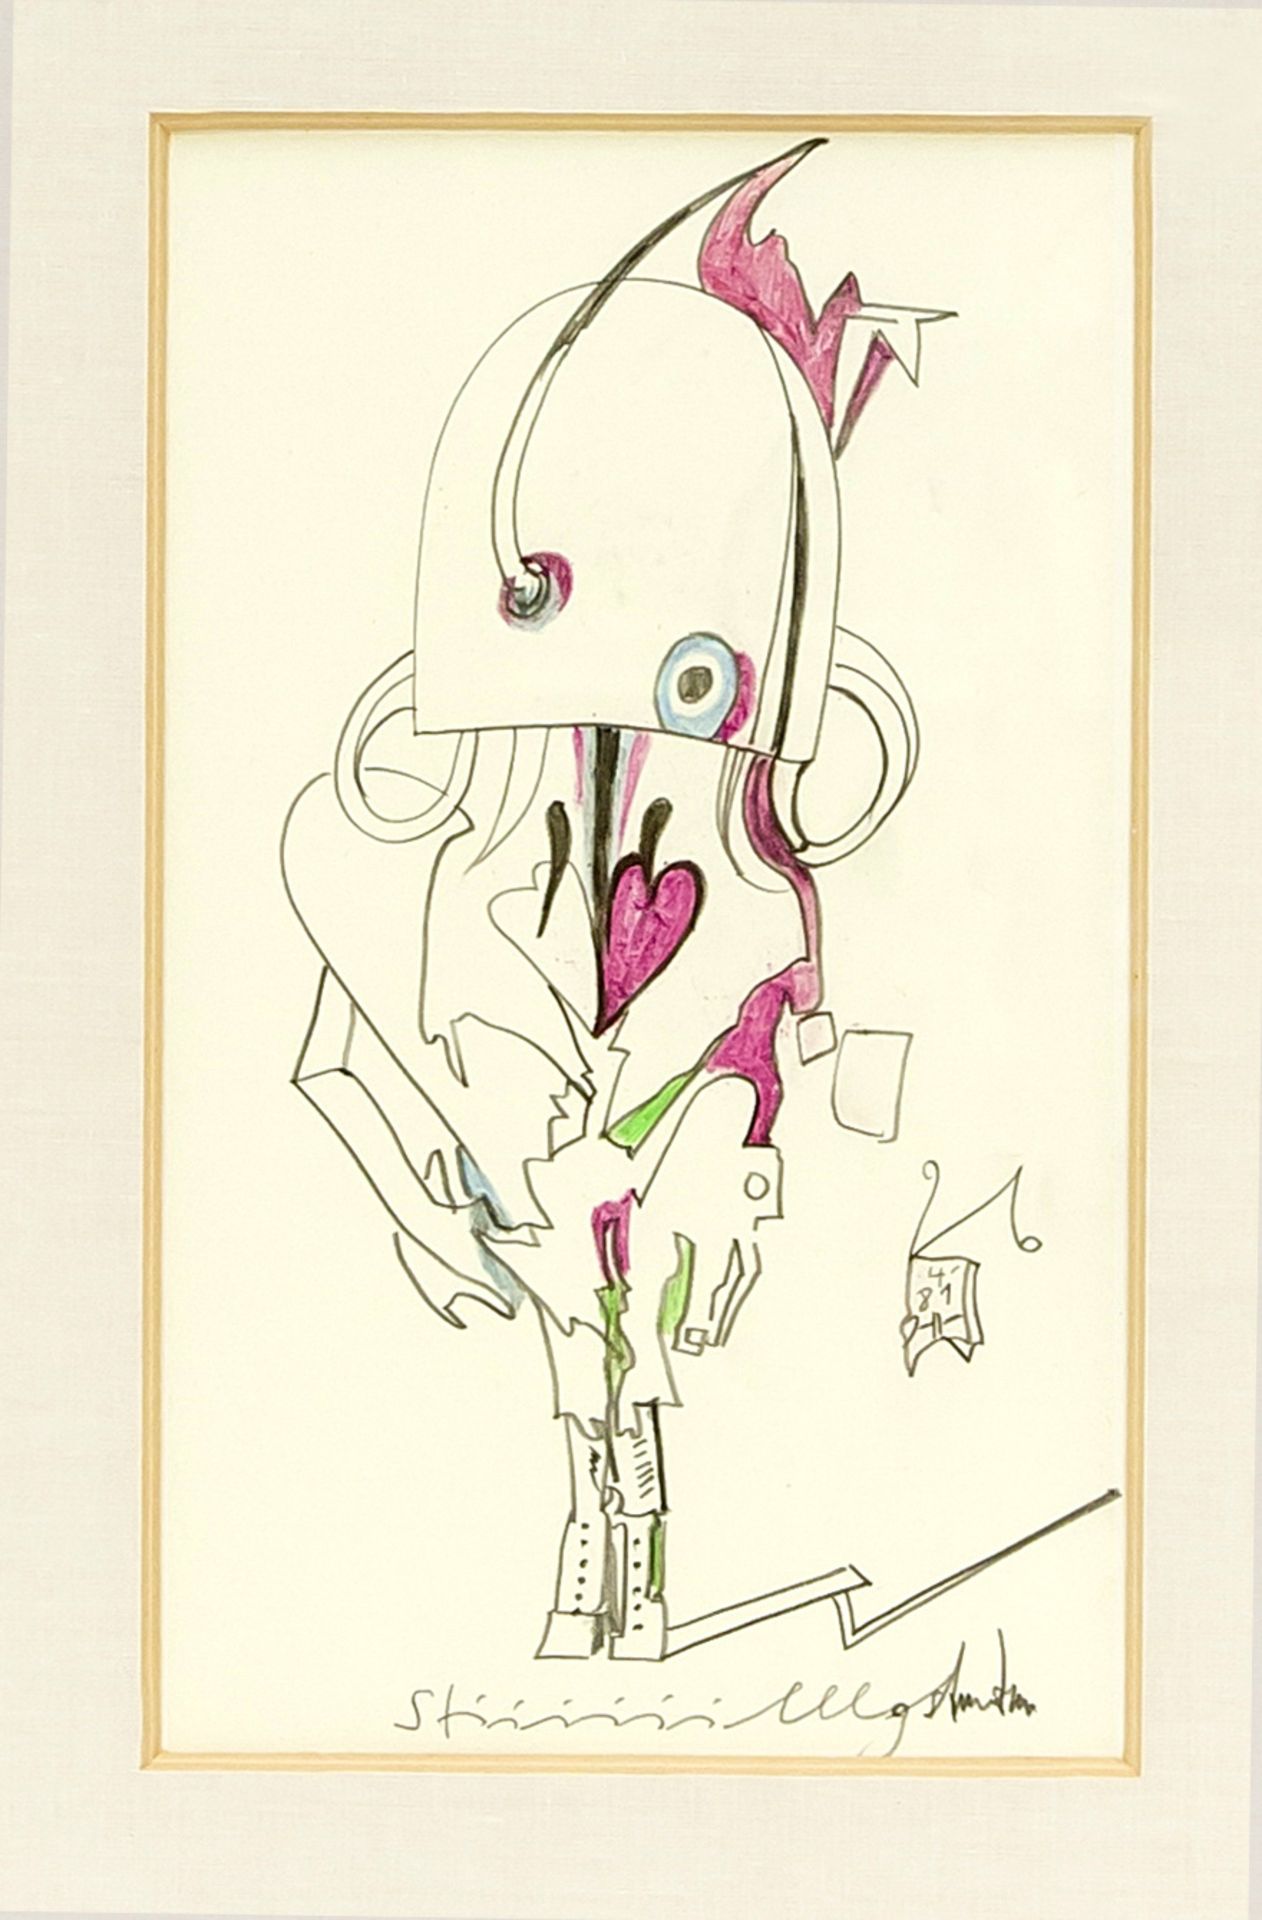 Horst Janssen (1929-1995), "Stiiiiilllgestanden", orig. Farbzeichnung von 1981, Farbstiftin Violett,